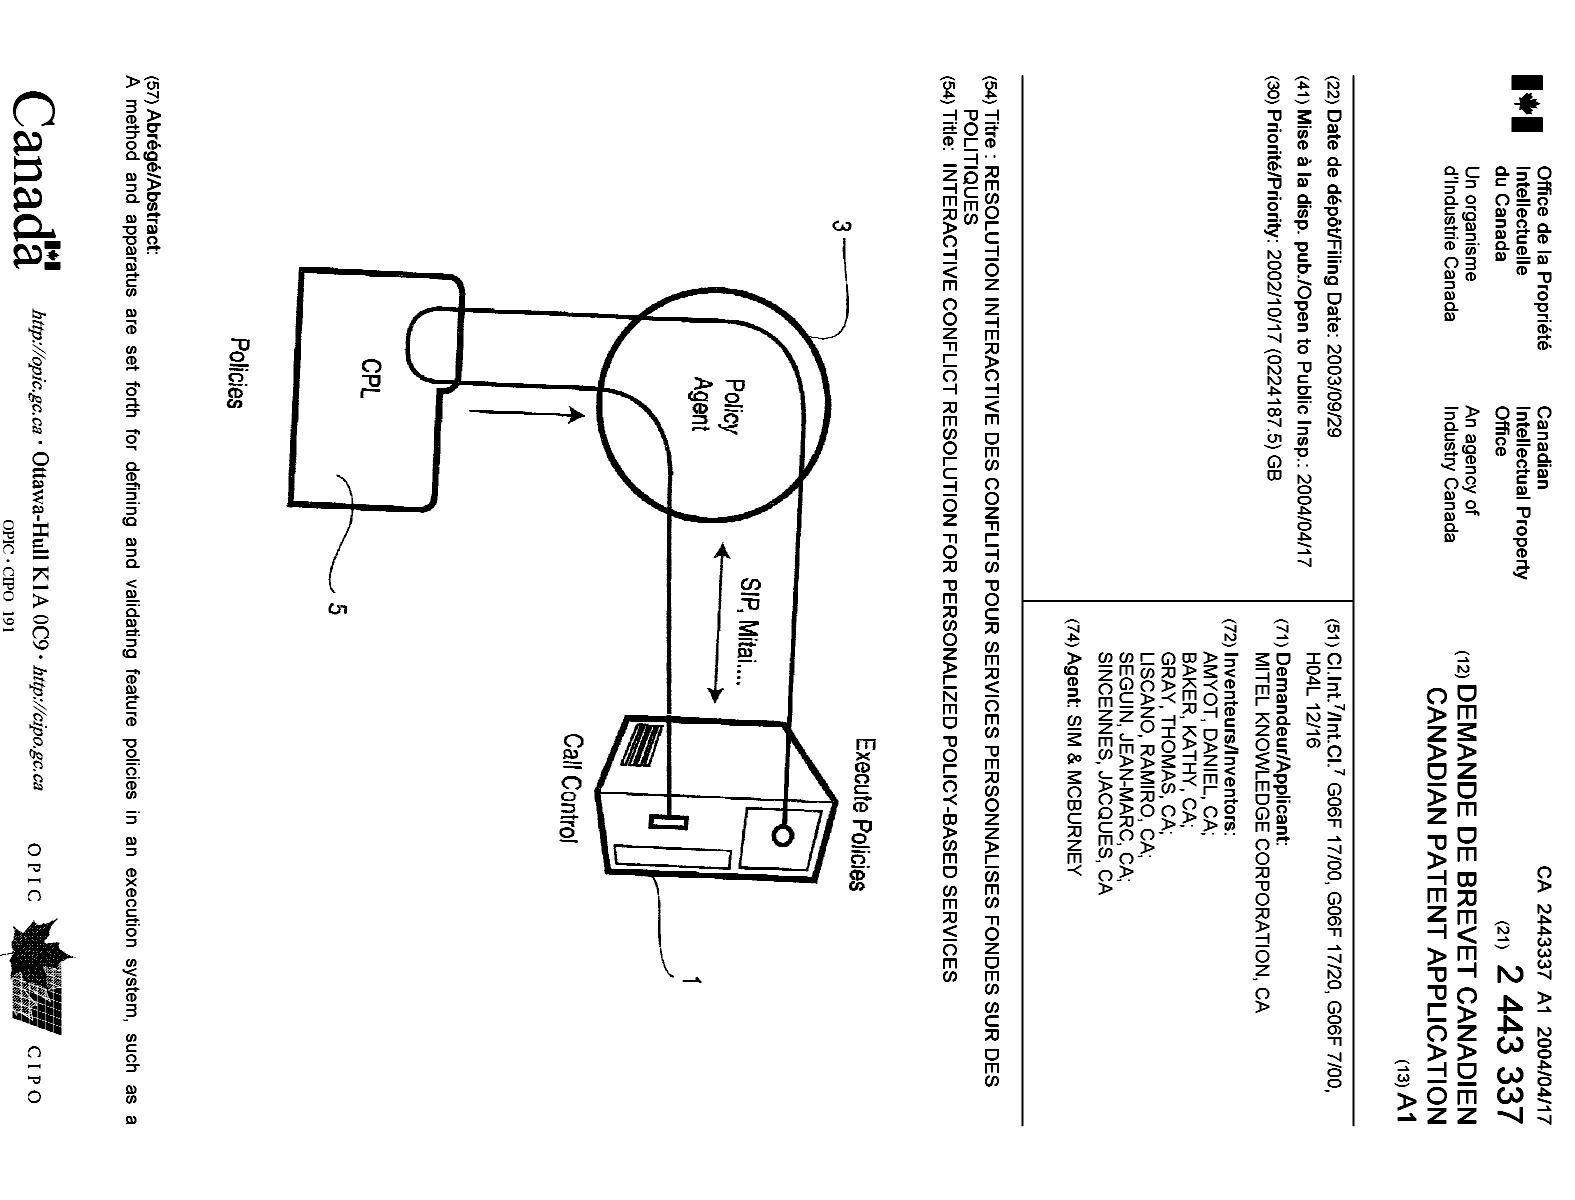 Document de brevet canadien 2443337. Page couverture 20040322. Image 1 de 2